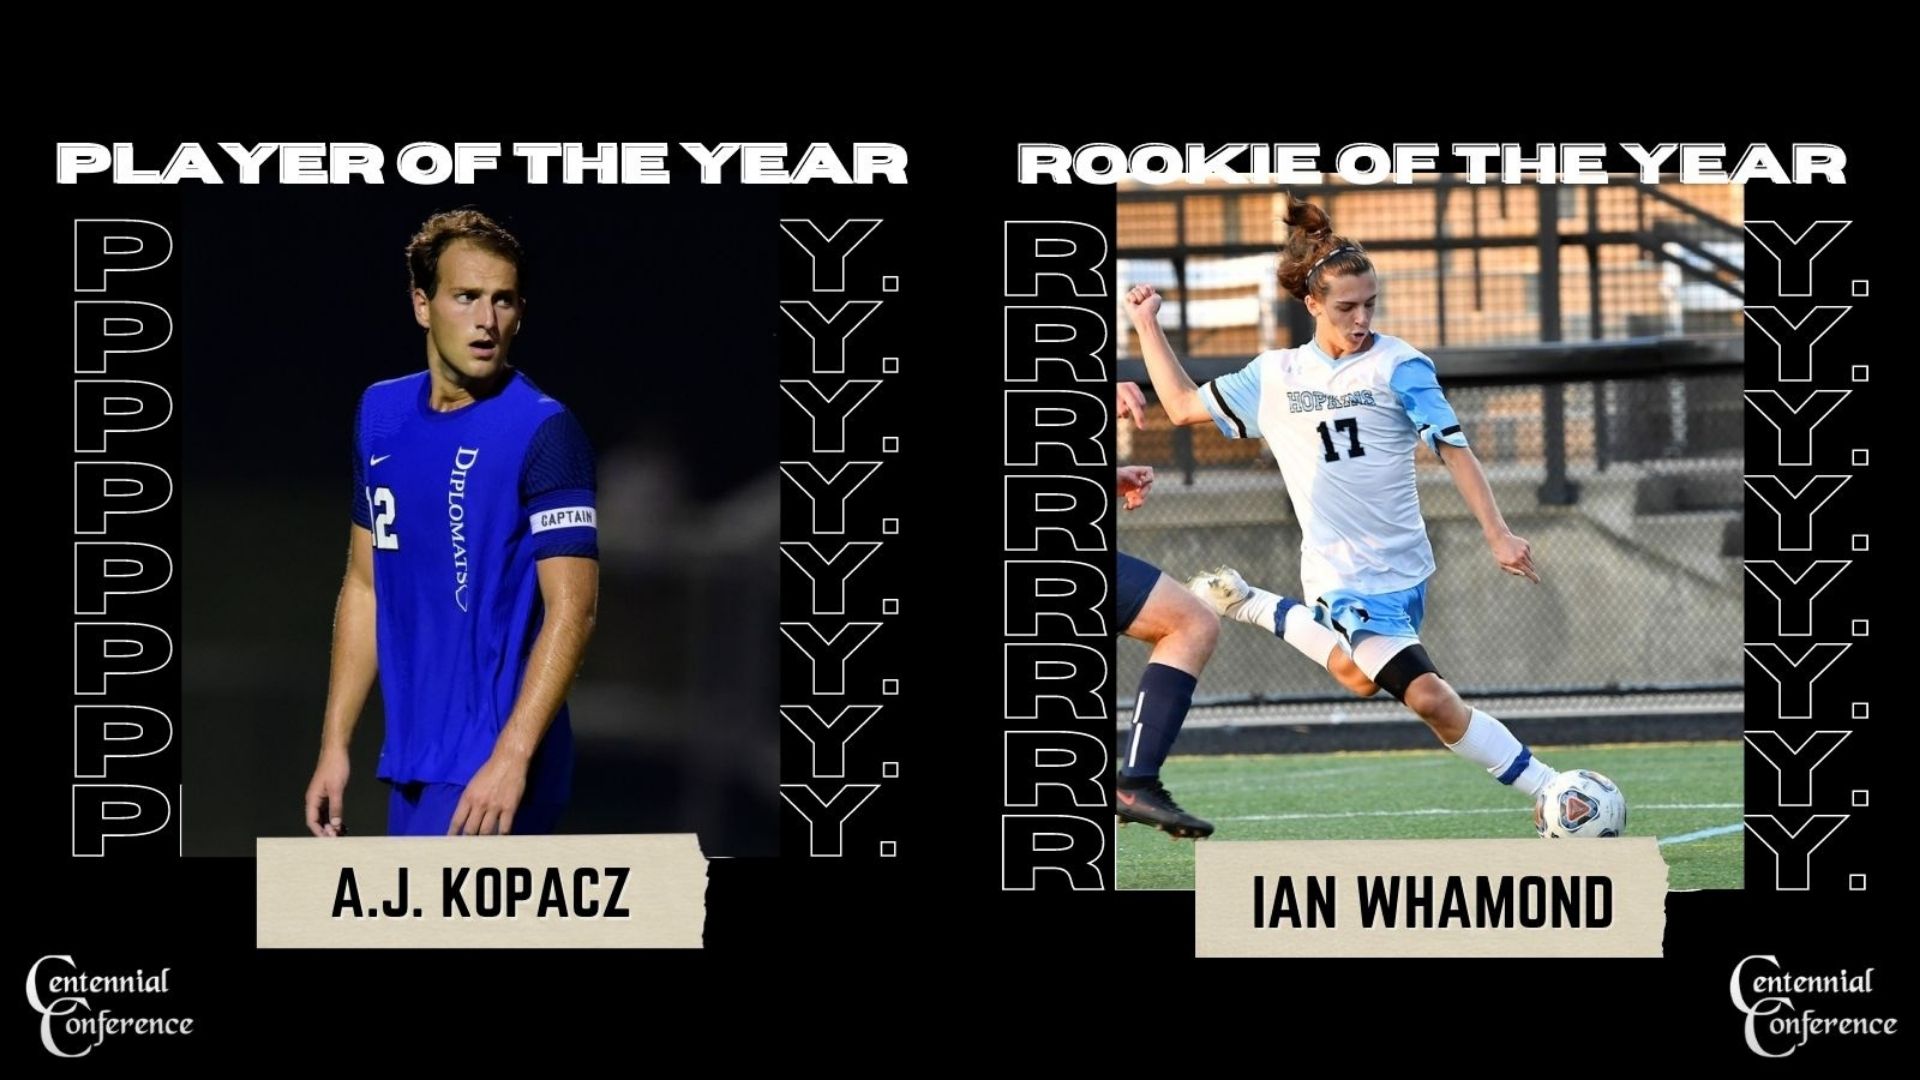 All-Centennial Men's Soccer: Kopacz Named Player of the Year